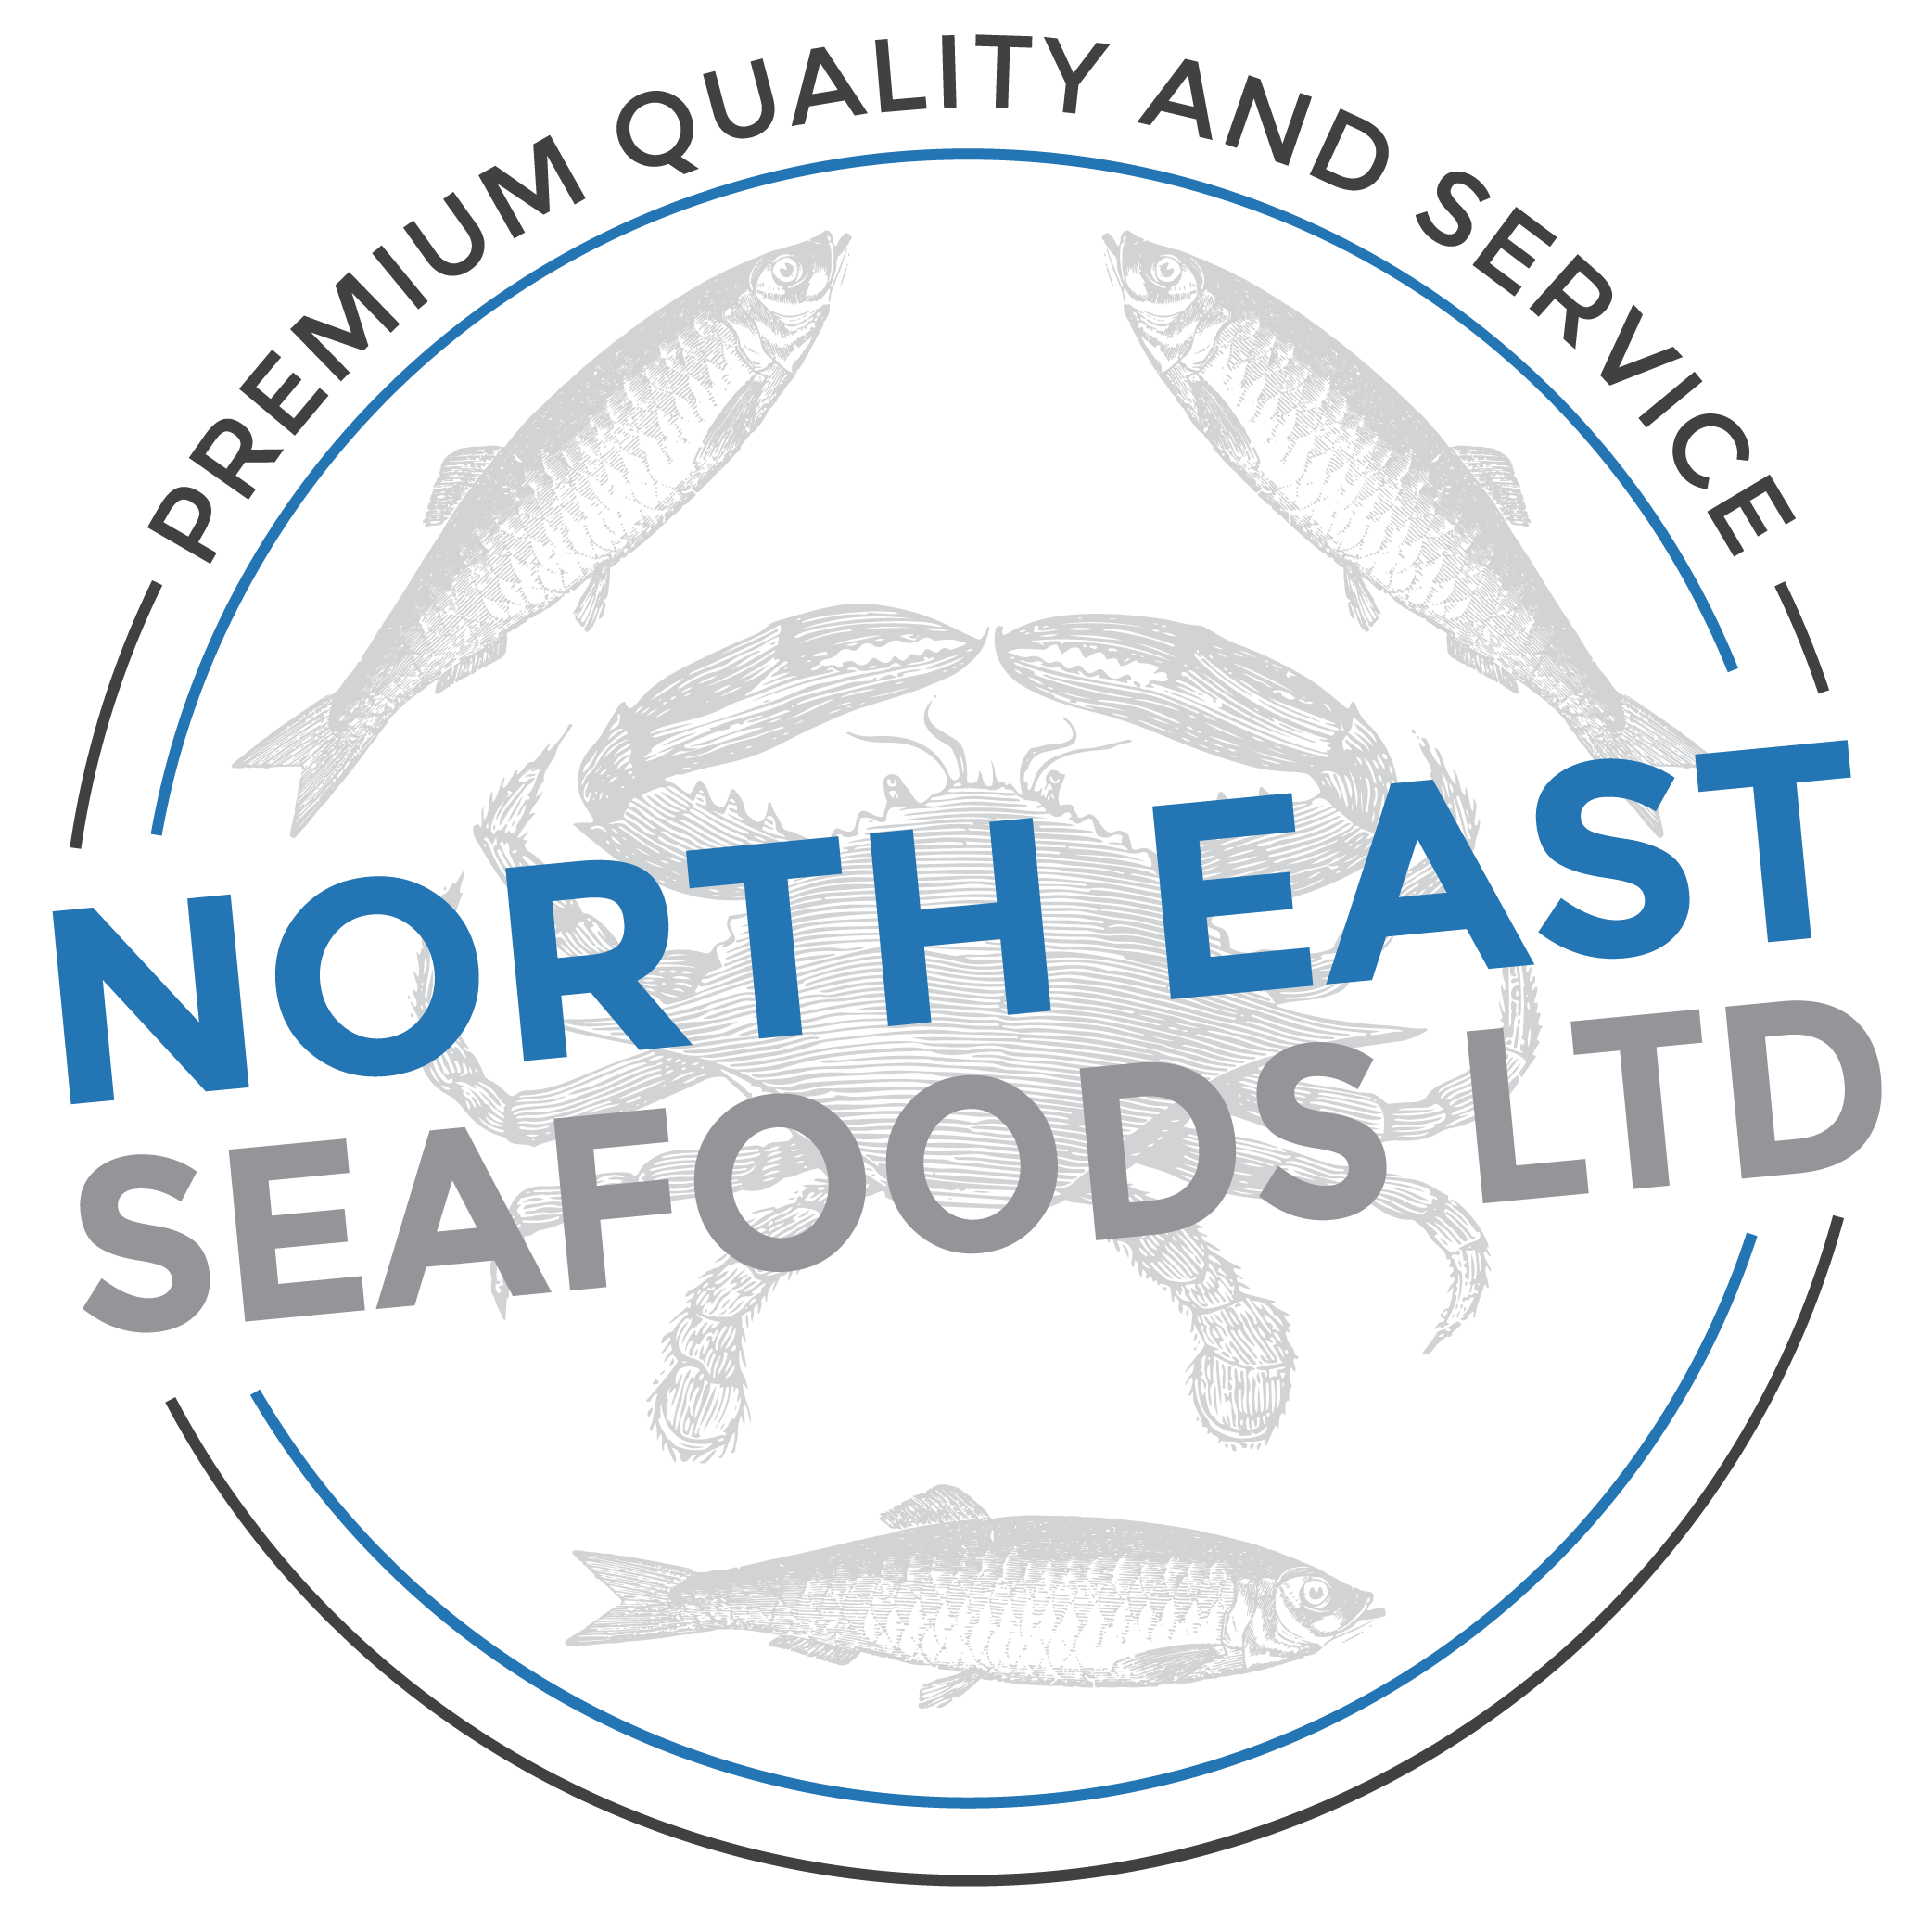 North East Seafoods LTD 01 